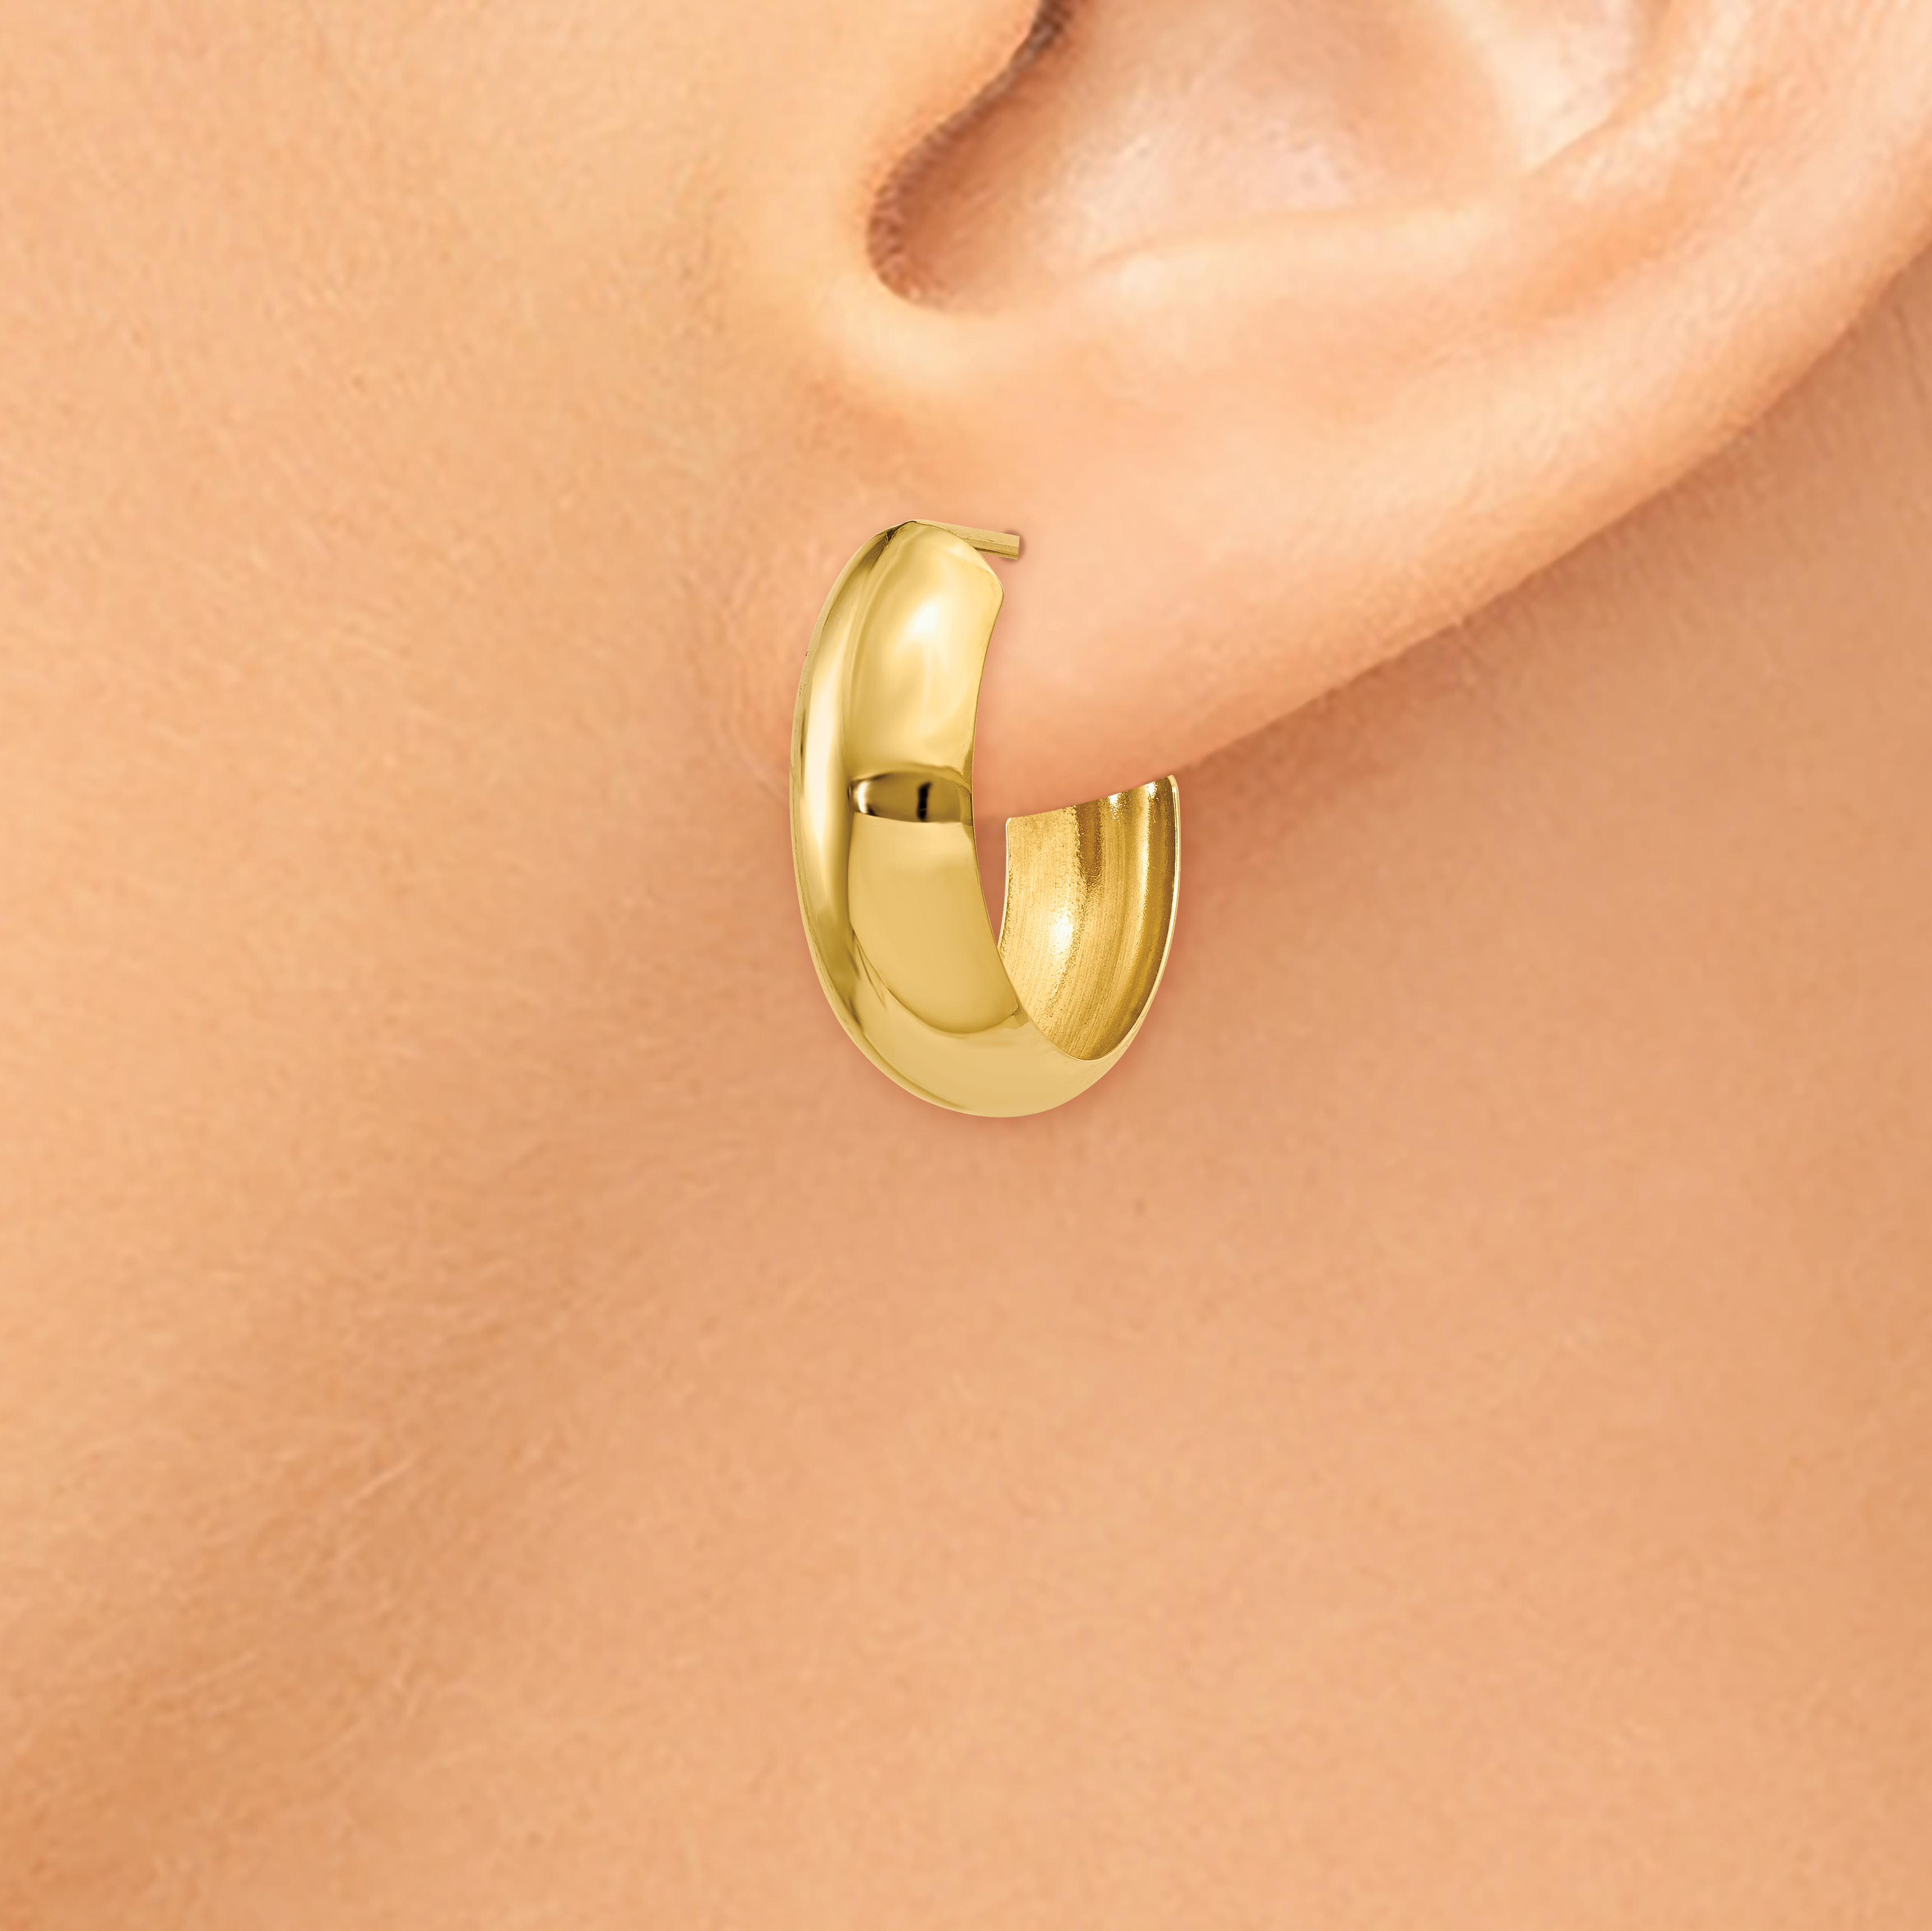 Mia Diamonds 14k White Gold Hoop Earrings 24mm x 7mm 